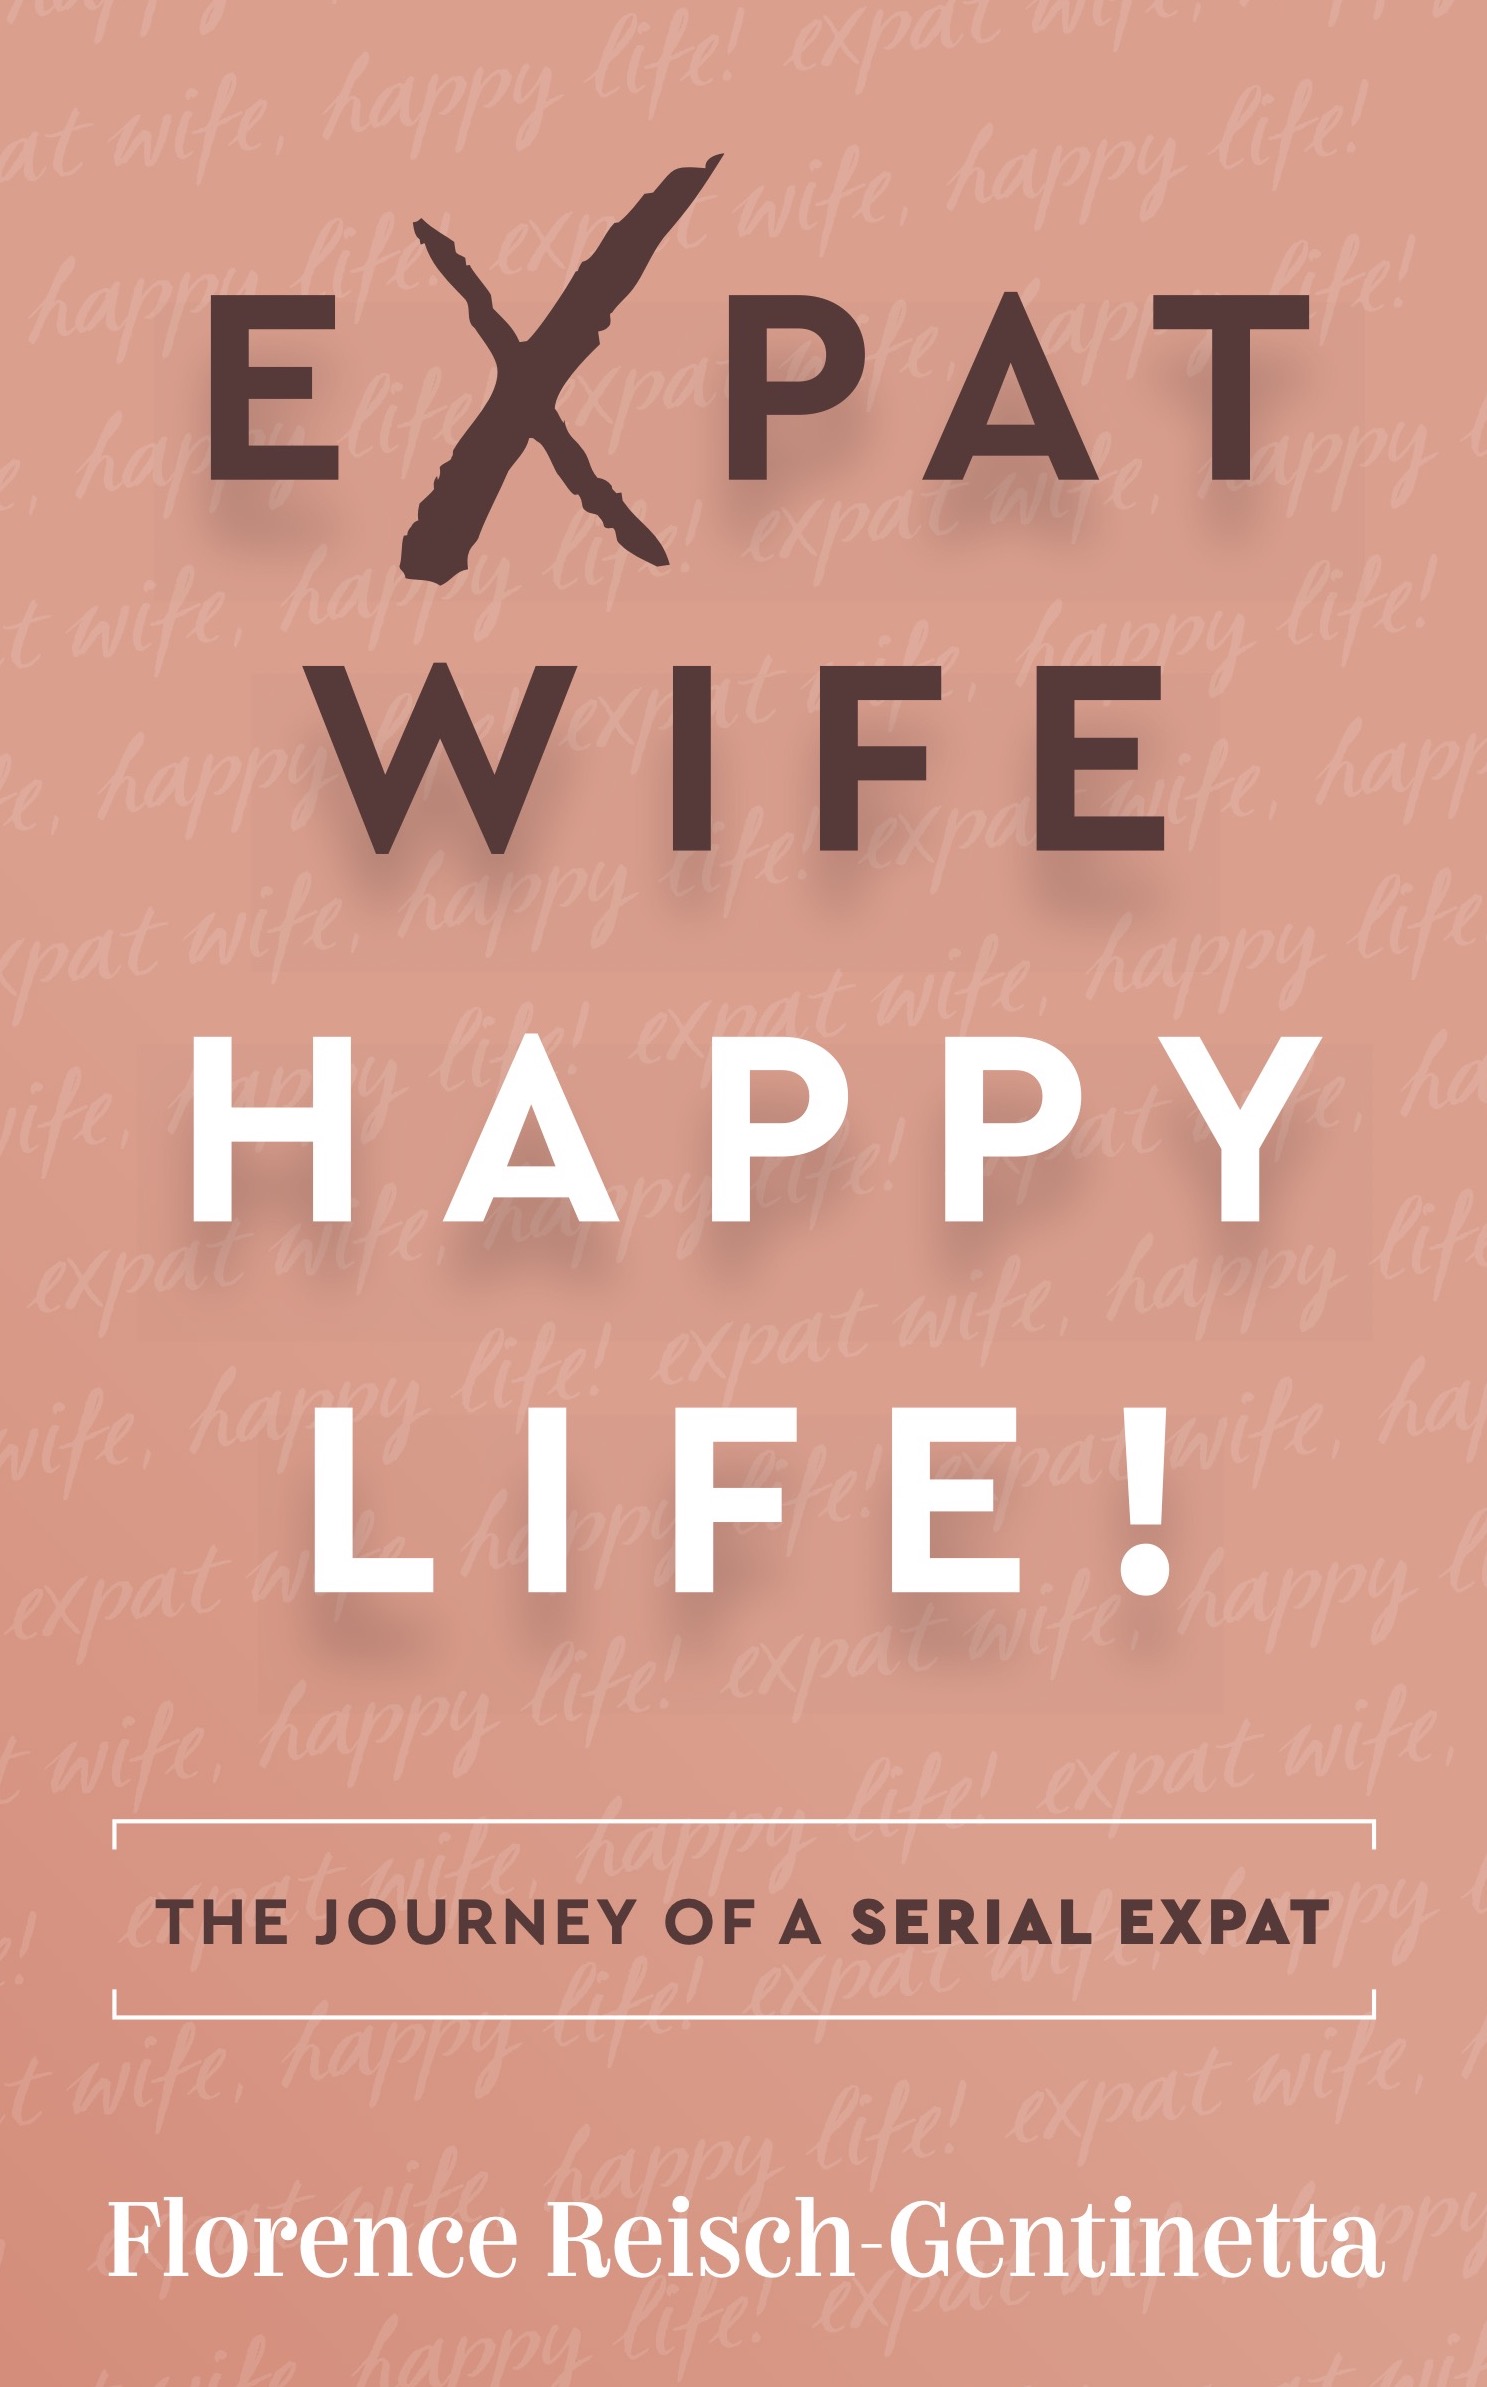 Expat Wife, Happy Life!